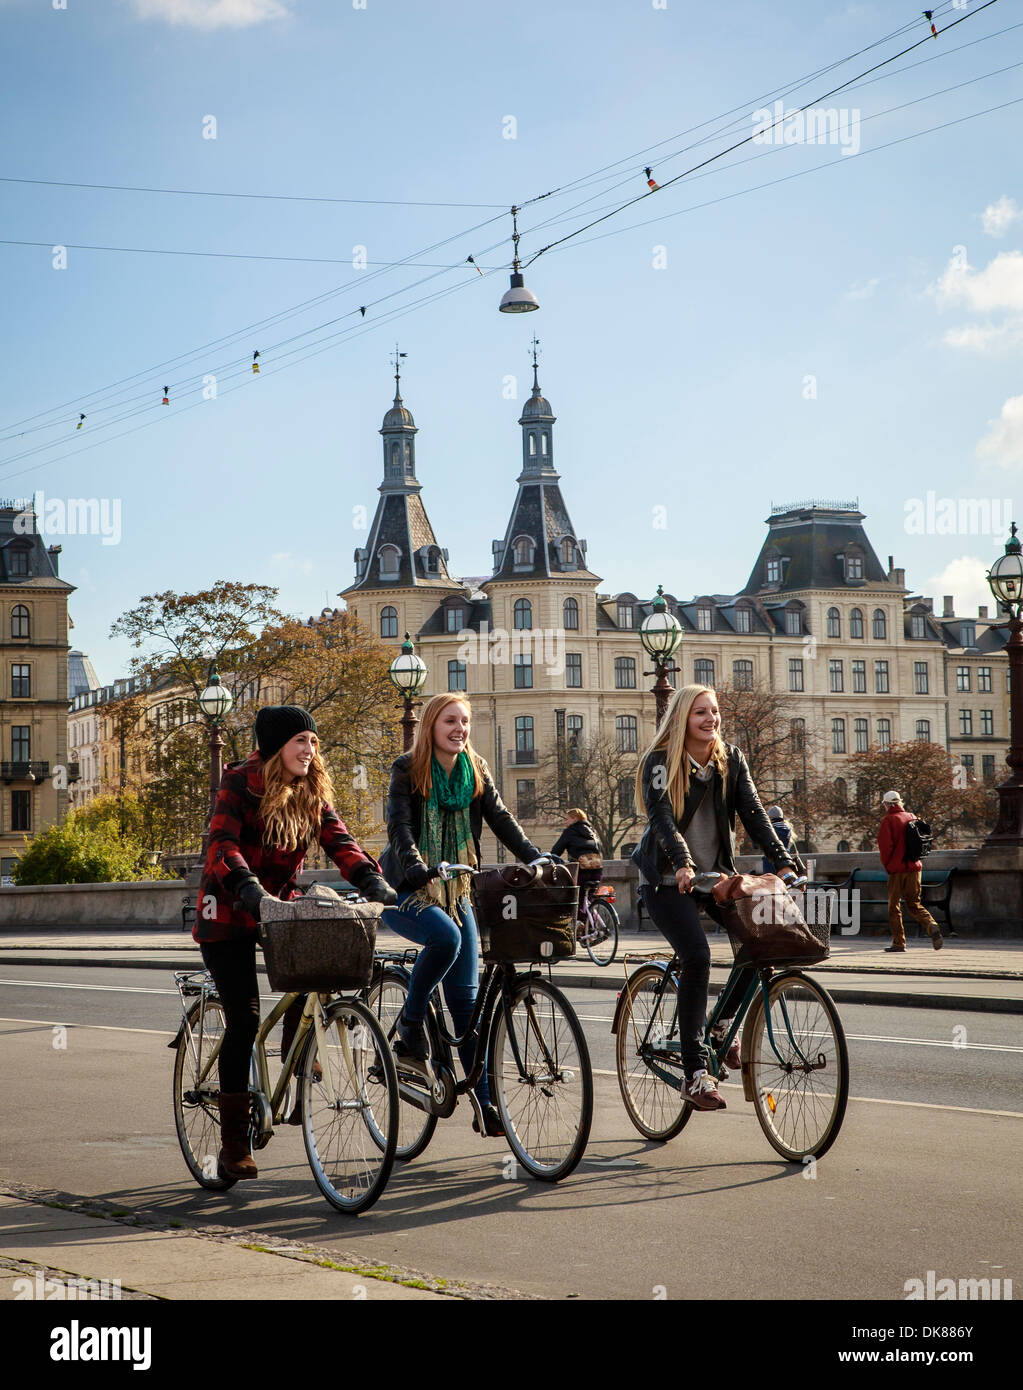 Frauen mit Fahrrad durch das Seengebiet in Nørrebrøgade, Kopenhagen, Dänemark. Stockfoto